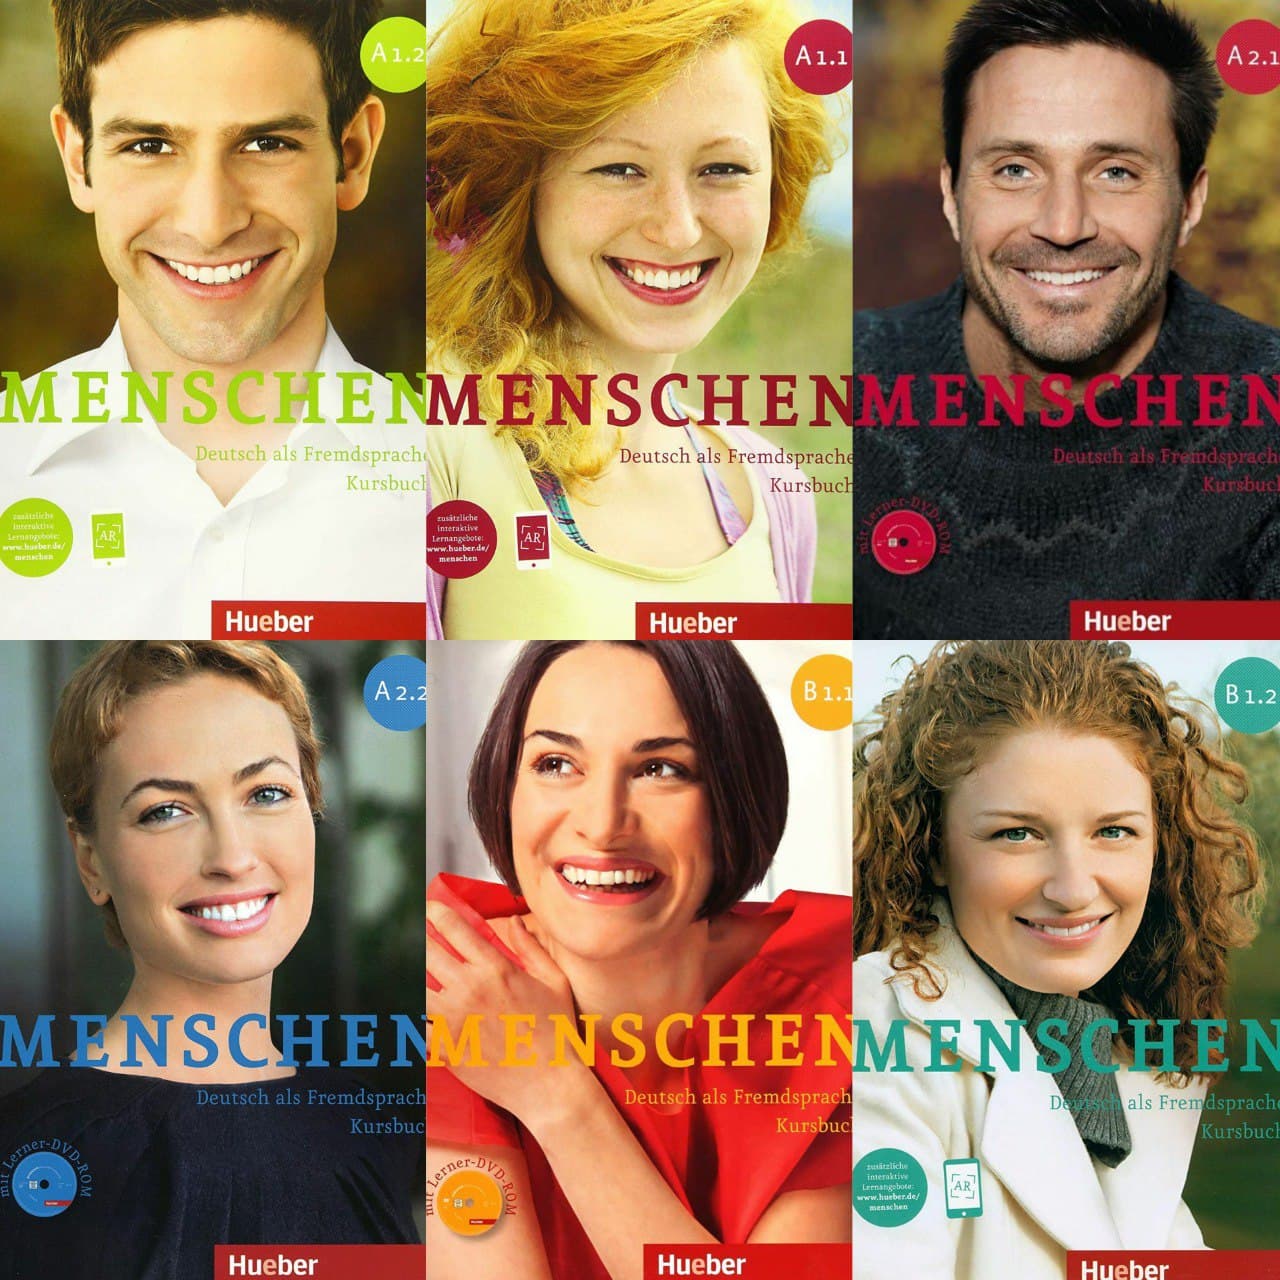 منشن یا اشتارتن ویا/ بهترین کتاب برای یادگیری زبان آلمانی کدام است؟